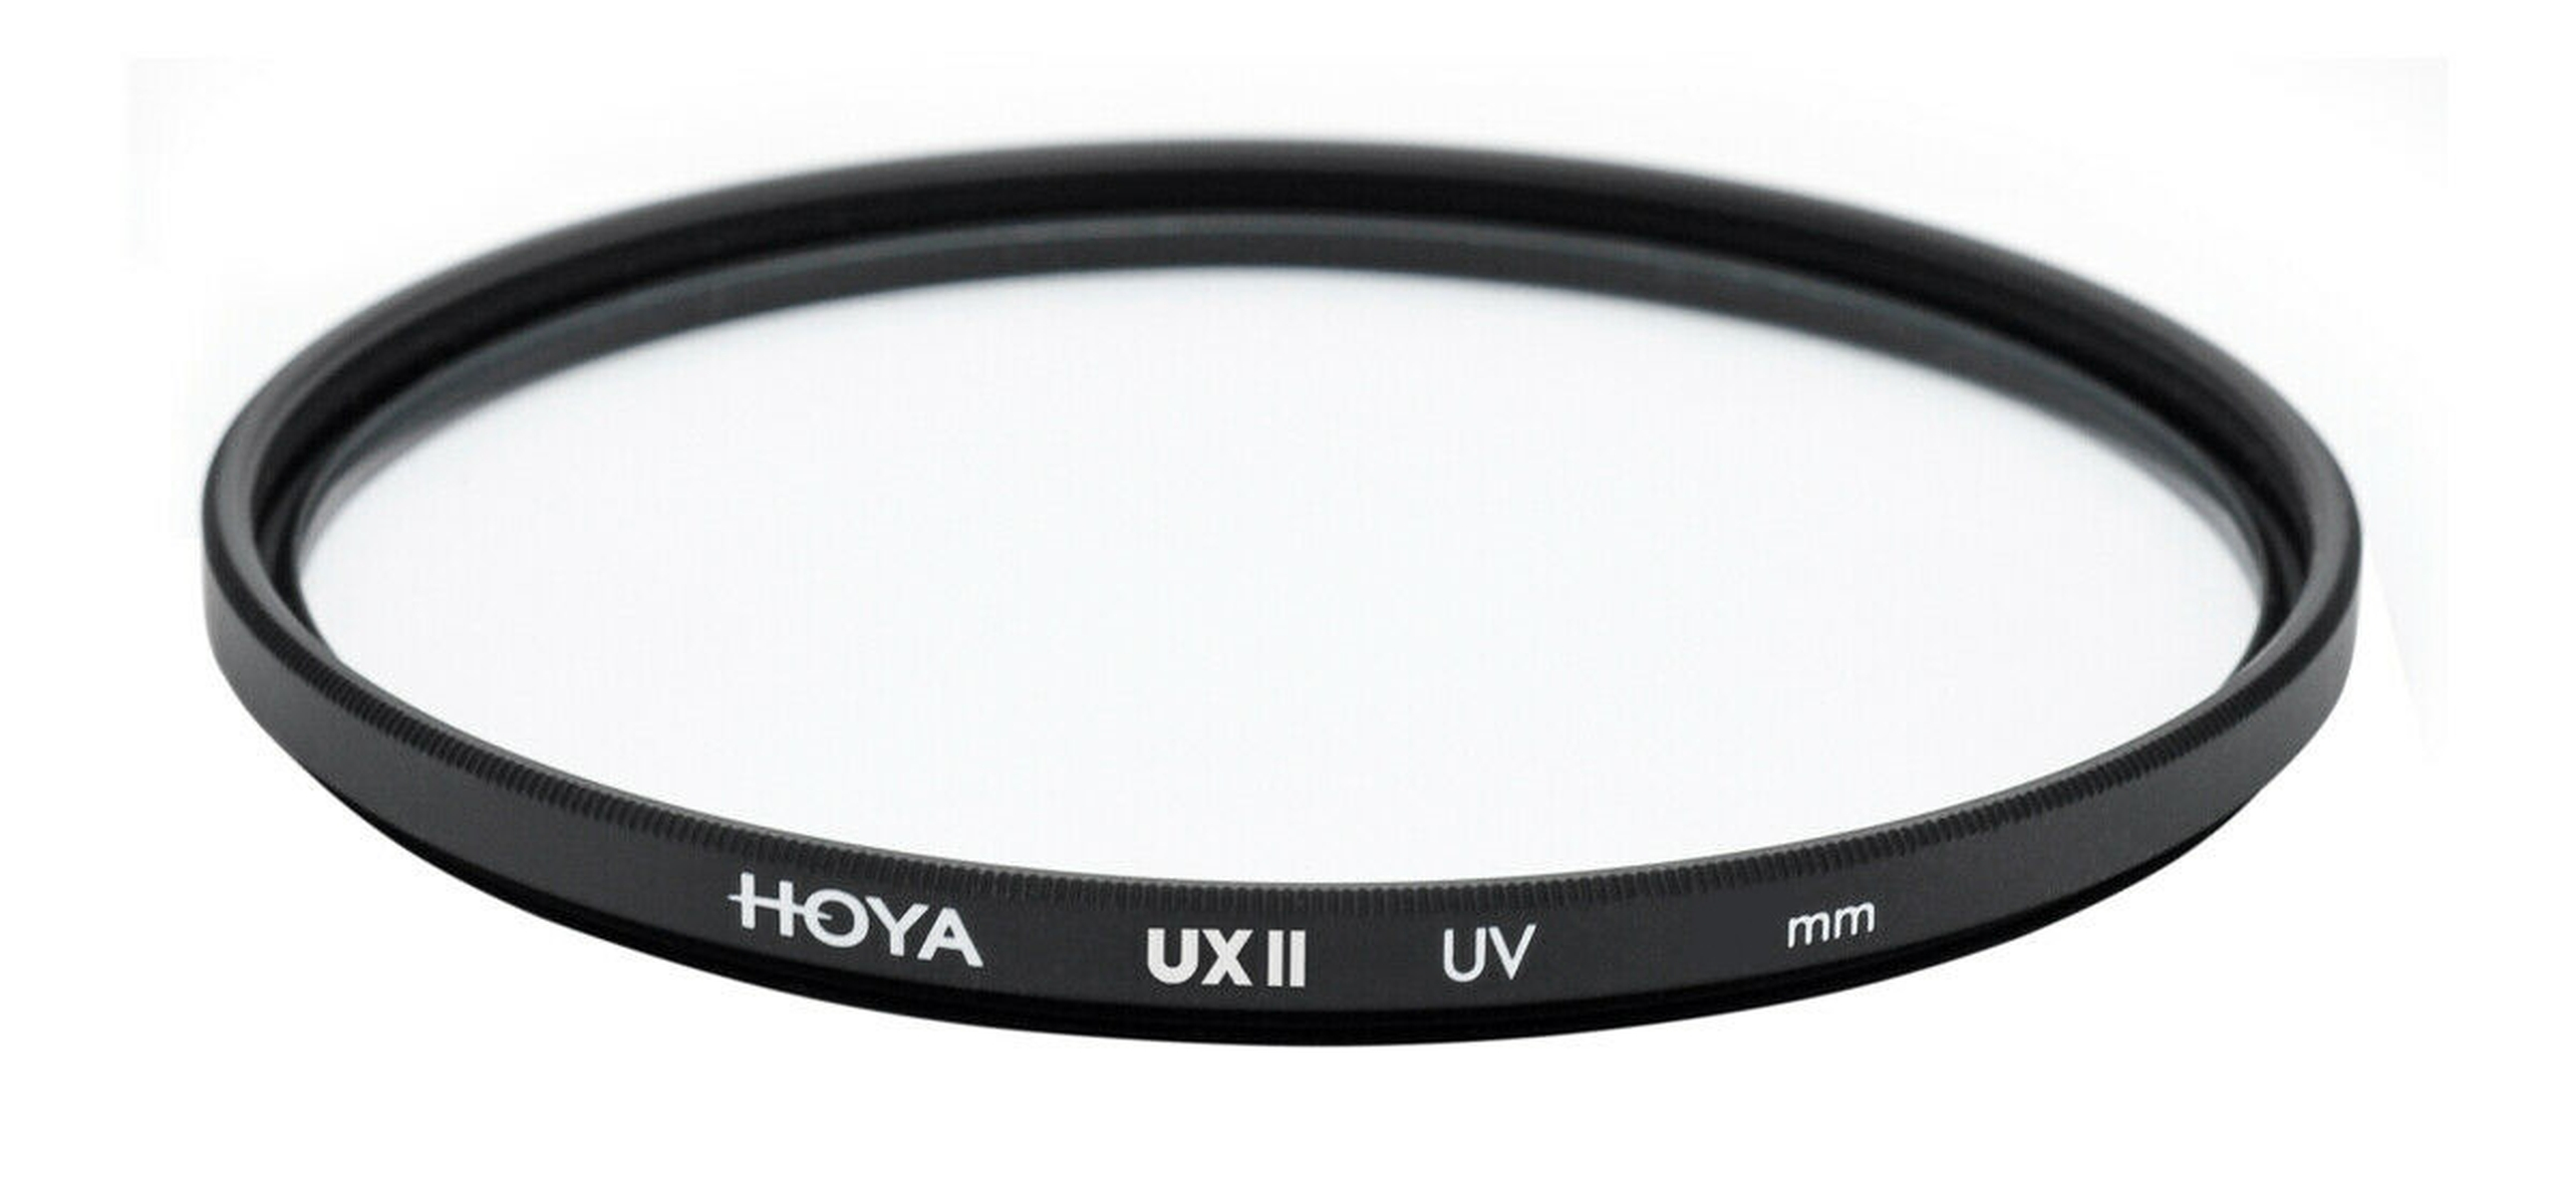 UV 62 UX mm II Filter HOYA